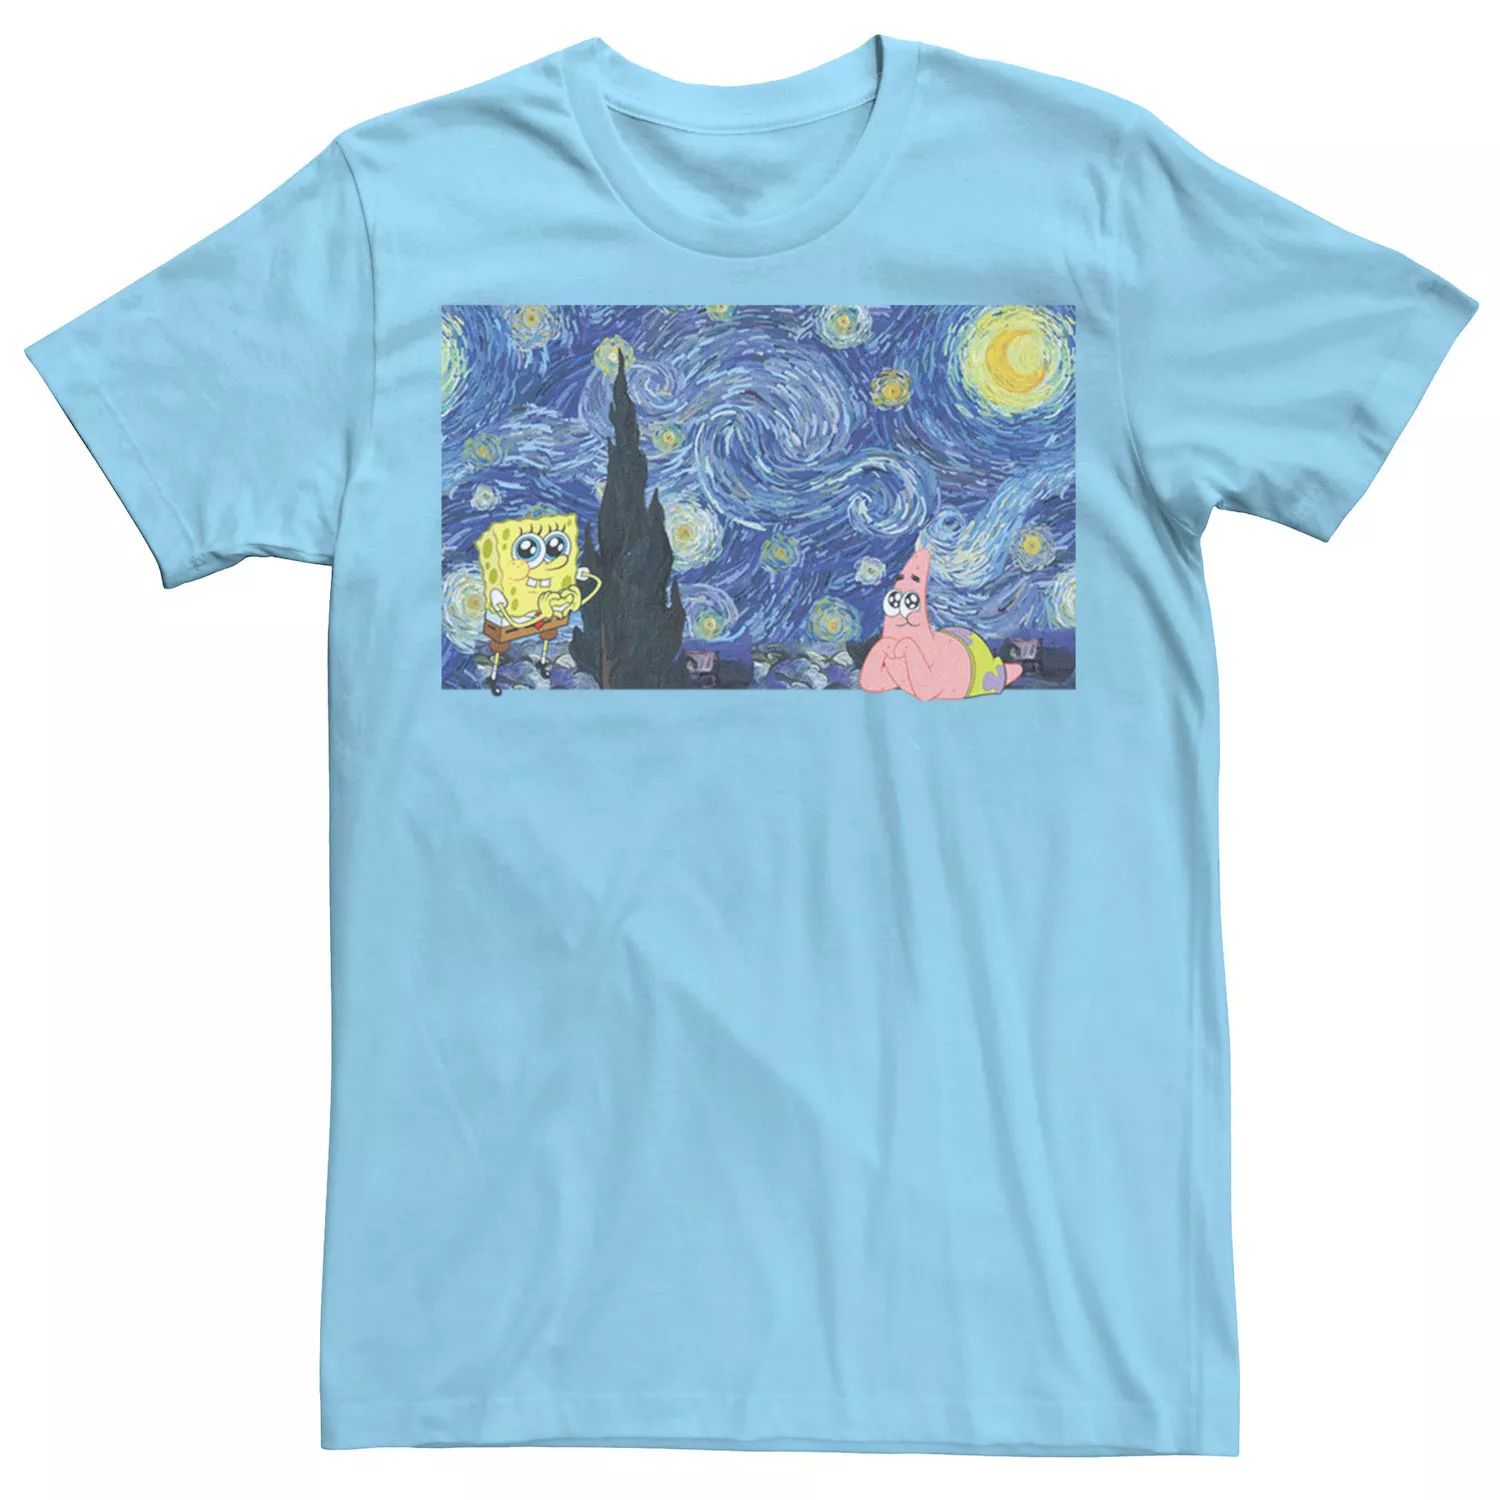 Мужская футболка «Звездная ночь» с изображением Губки Боба Квадратные Штаны Licensed Character